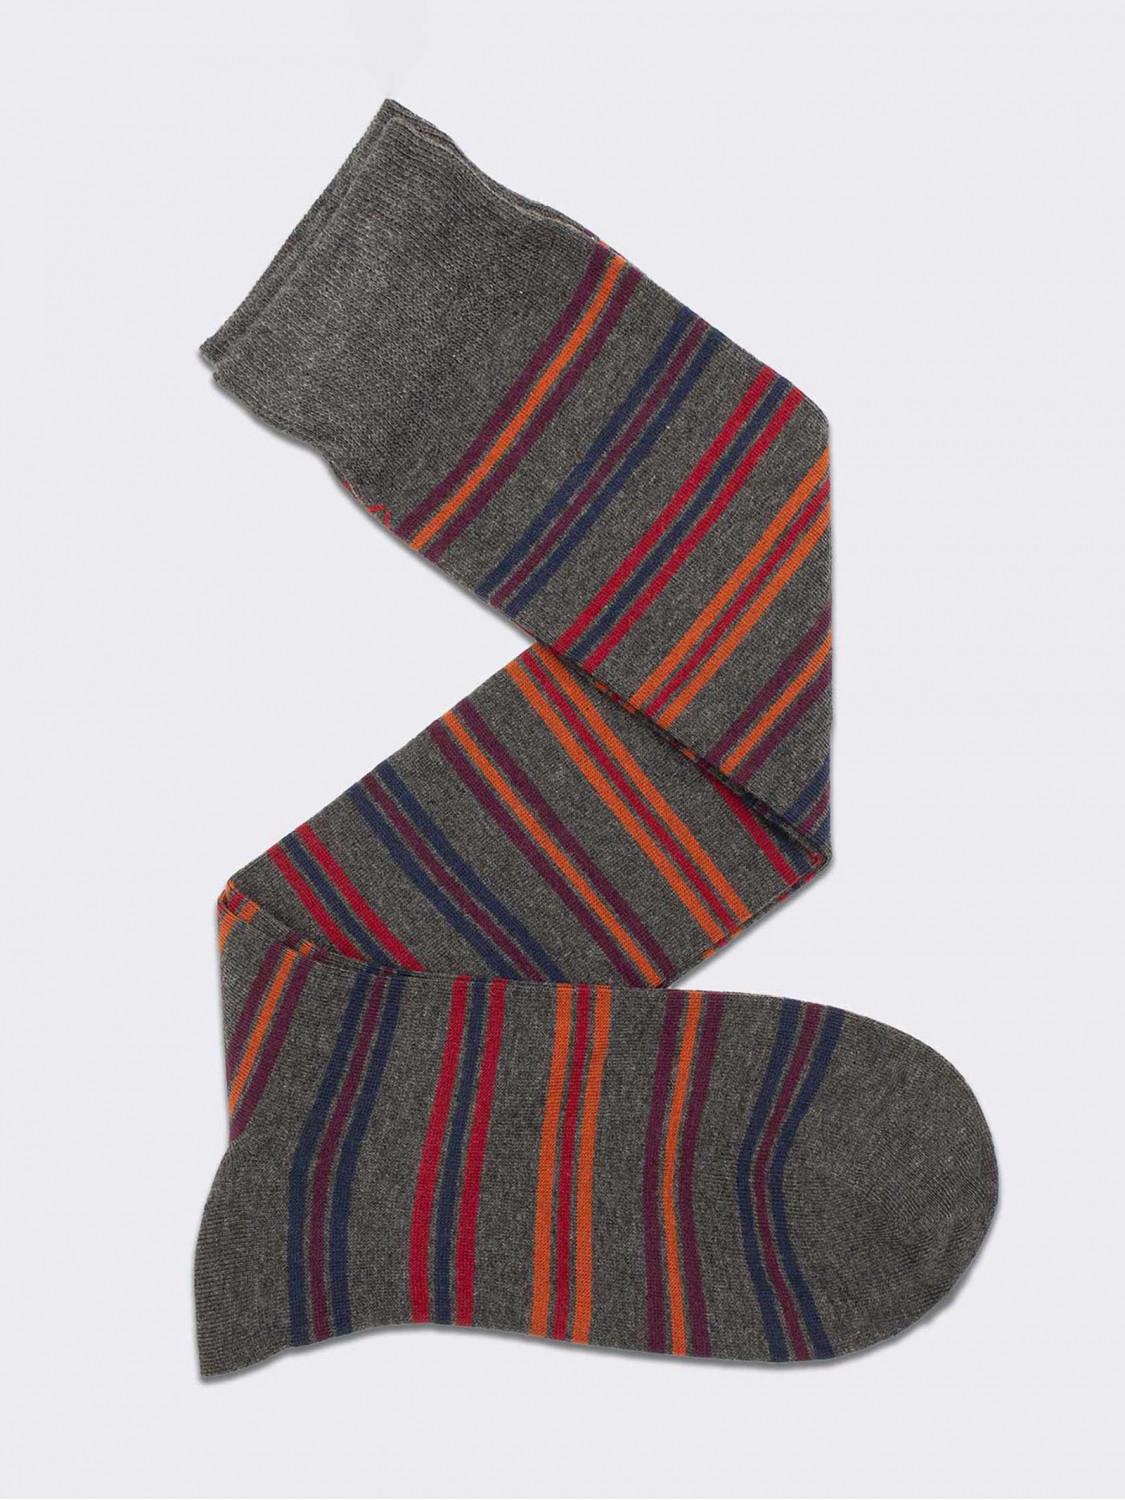 Long socks, striped pattern in warm cotton